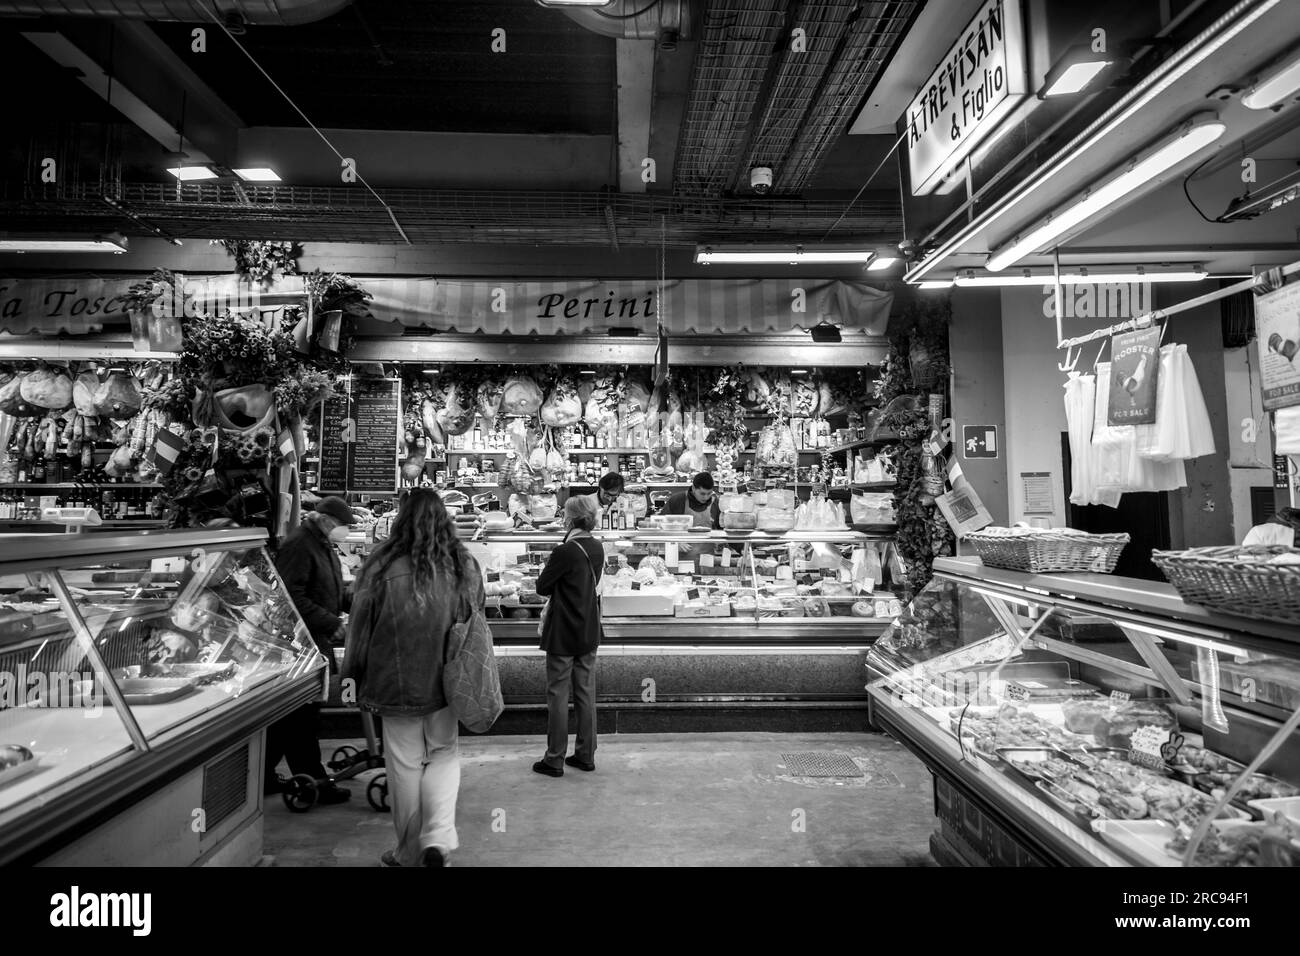 Florenz, Italien - 5. April 2022: Der Mercato Centrale ist ein Lebensmittelmarkt zwischen Via dell'Ariento, Via Sant'Antonino und Via Panicale, Florenz. Stockfoto